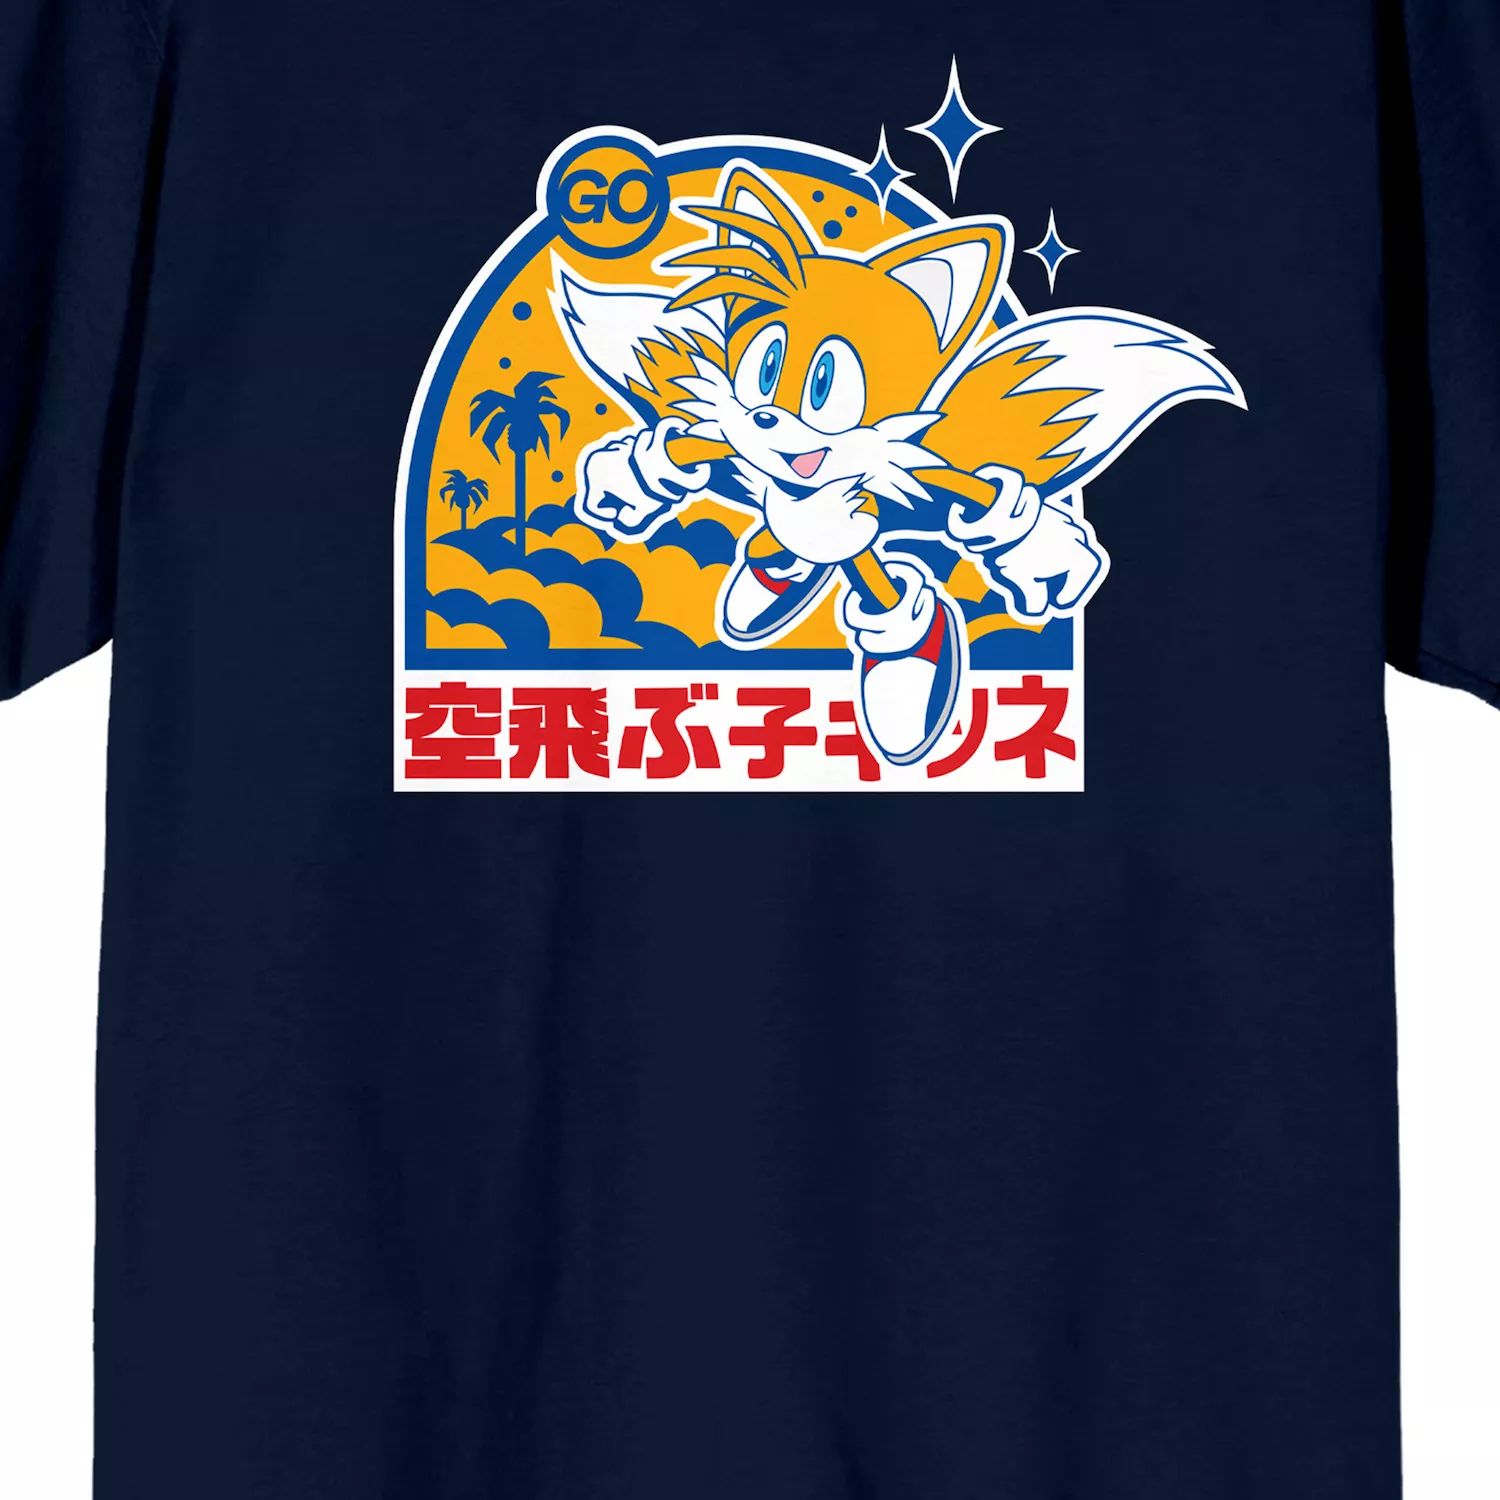 цена Мужская футболка Sonic the Hedgehog Tails Licensed Character